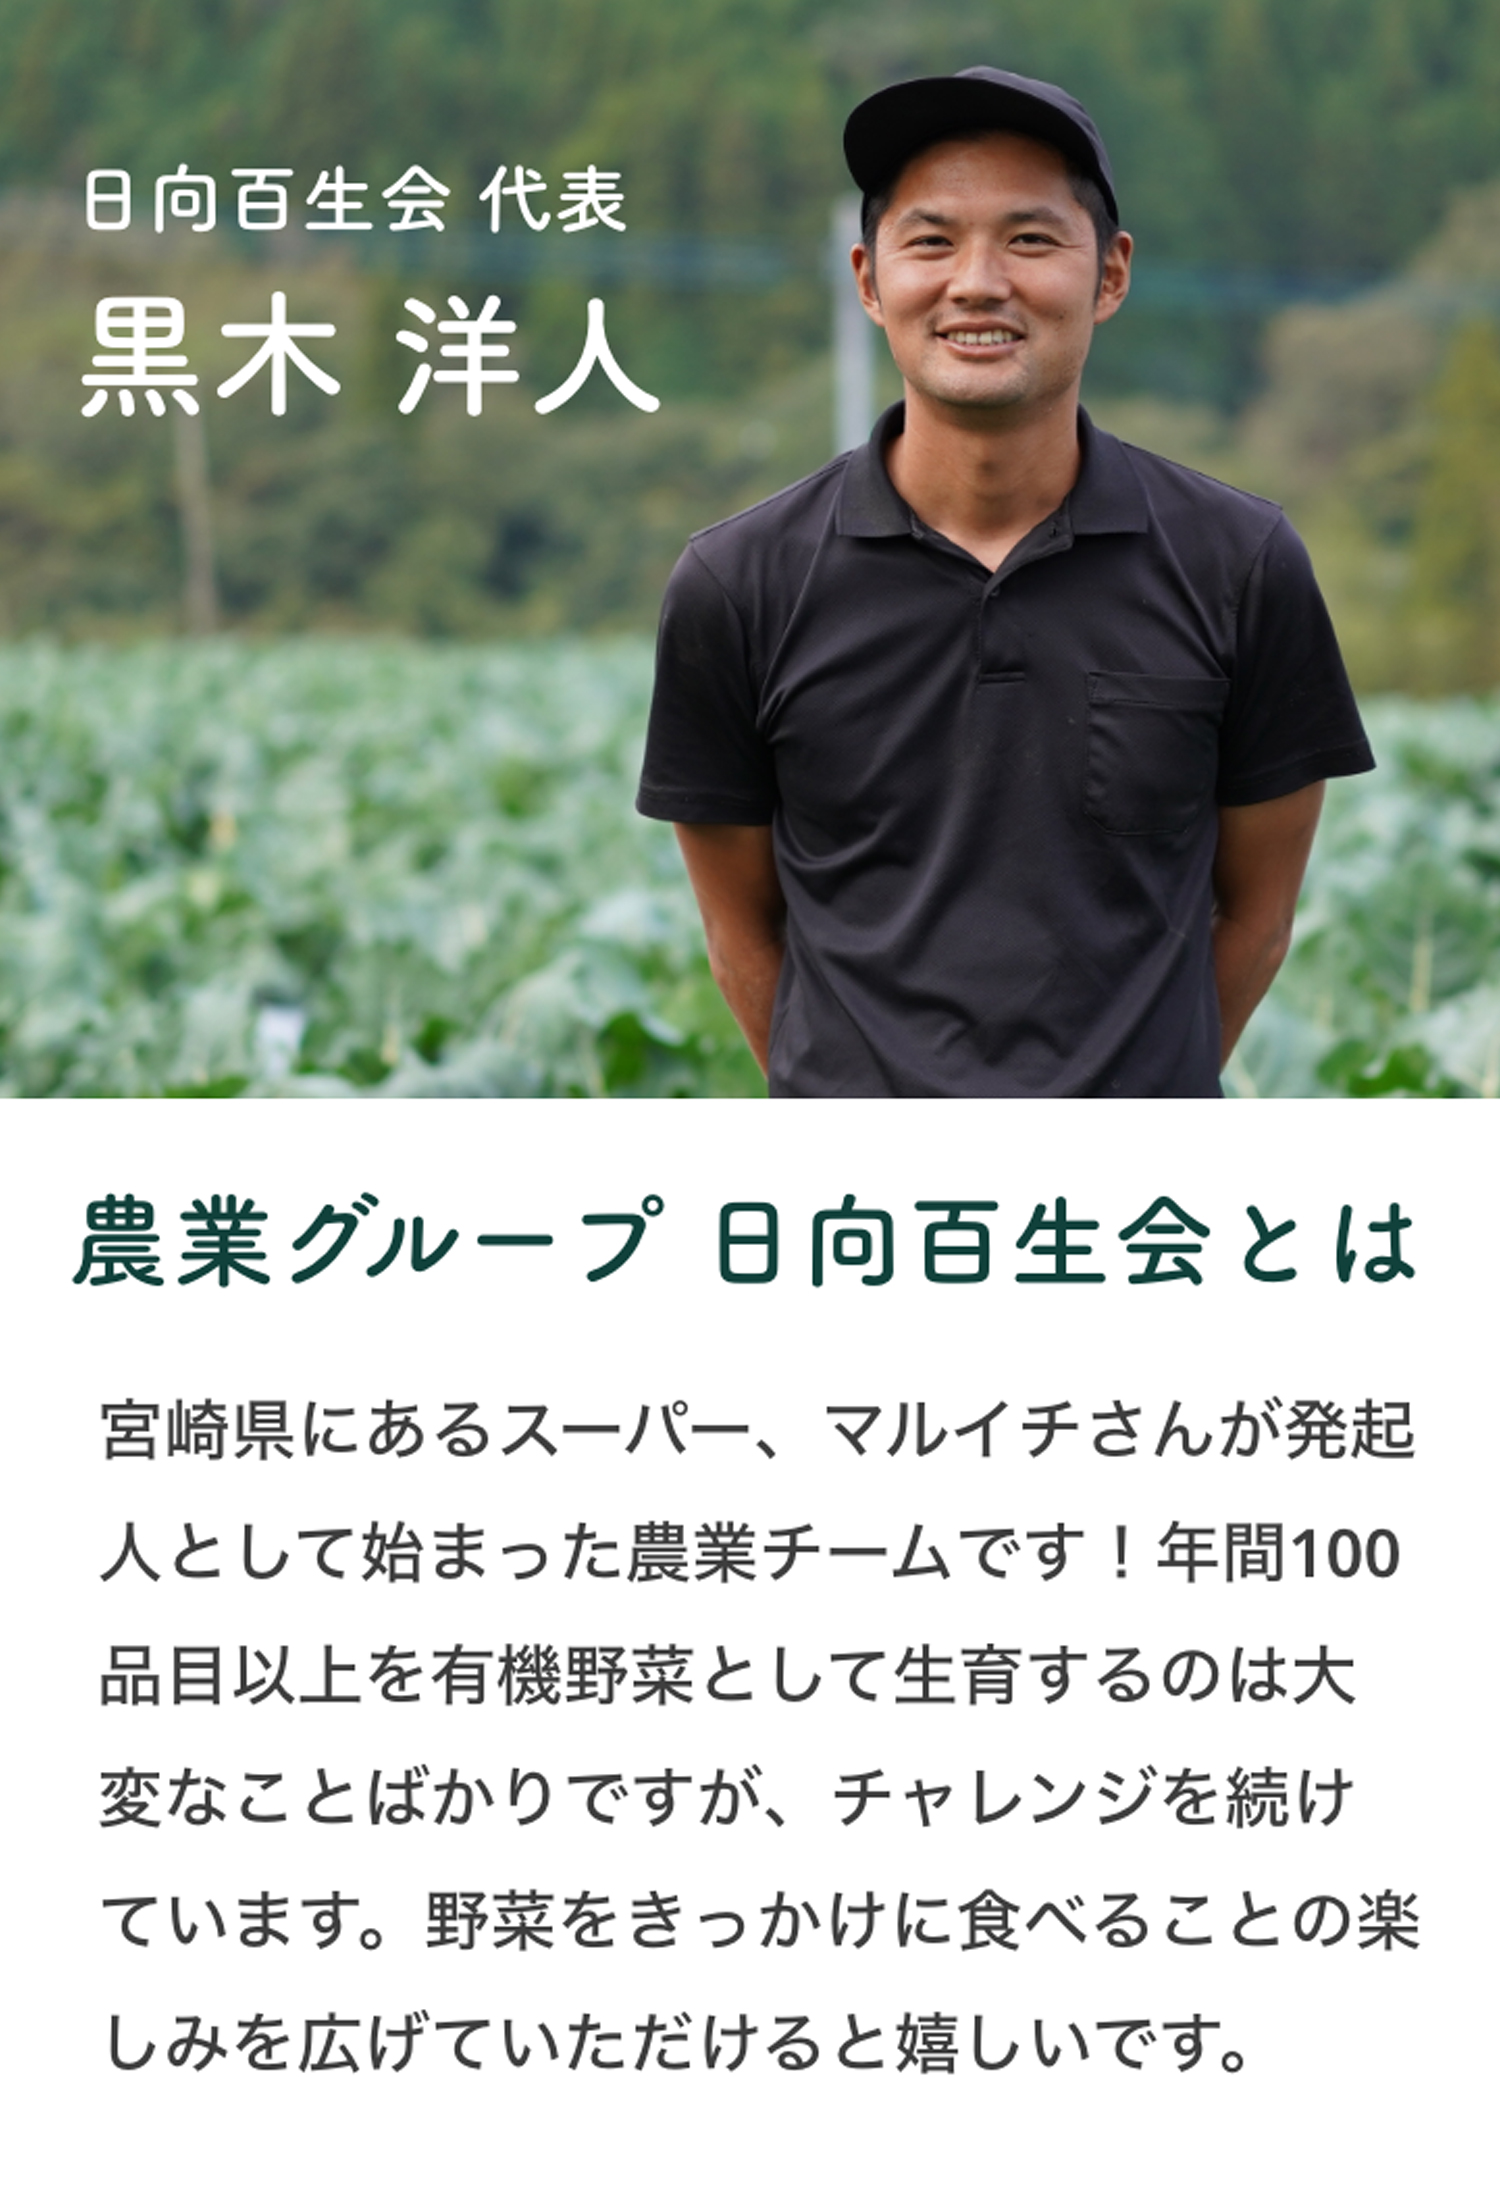 日向百生会 代表 黒木洋人　農業グループ日向百生会とは 宮崎県にあるスーパー、マルイチさんが発起人として始まった農業チームです！年間100品目以上を有機野菜として生育するのは大変なことばかりですが、チャレンジを続けています。野菜をきっかけに食べることの楽しみを広げていただけると嬉しいです。